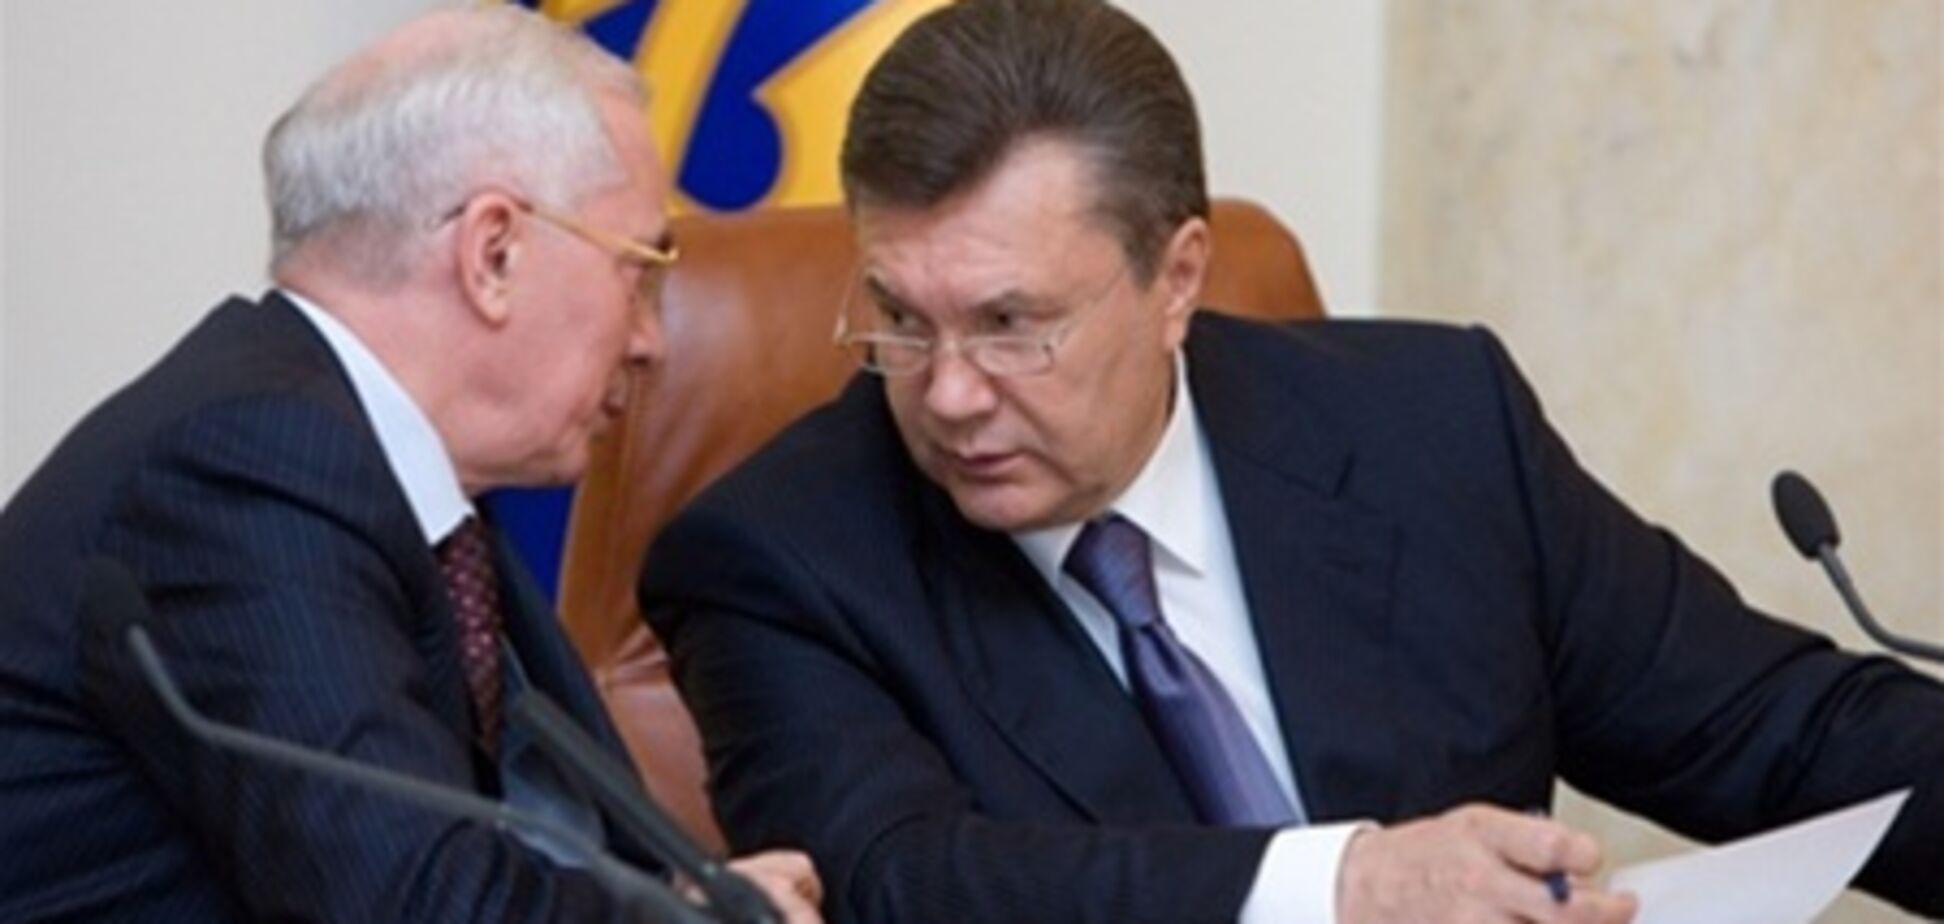 Янукович 2 ноября примет участие в заседании Кабмина. Пять министров под угрозой увольнения